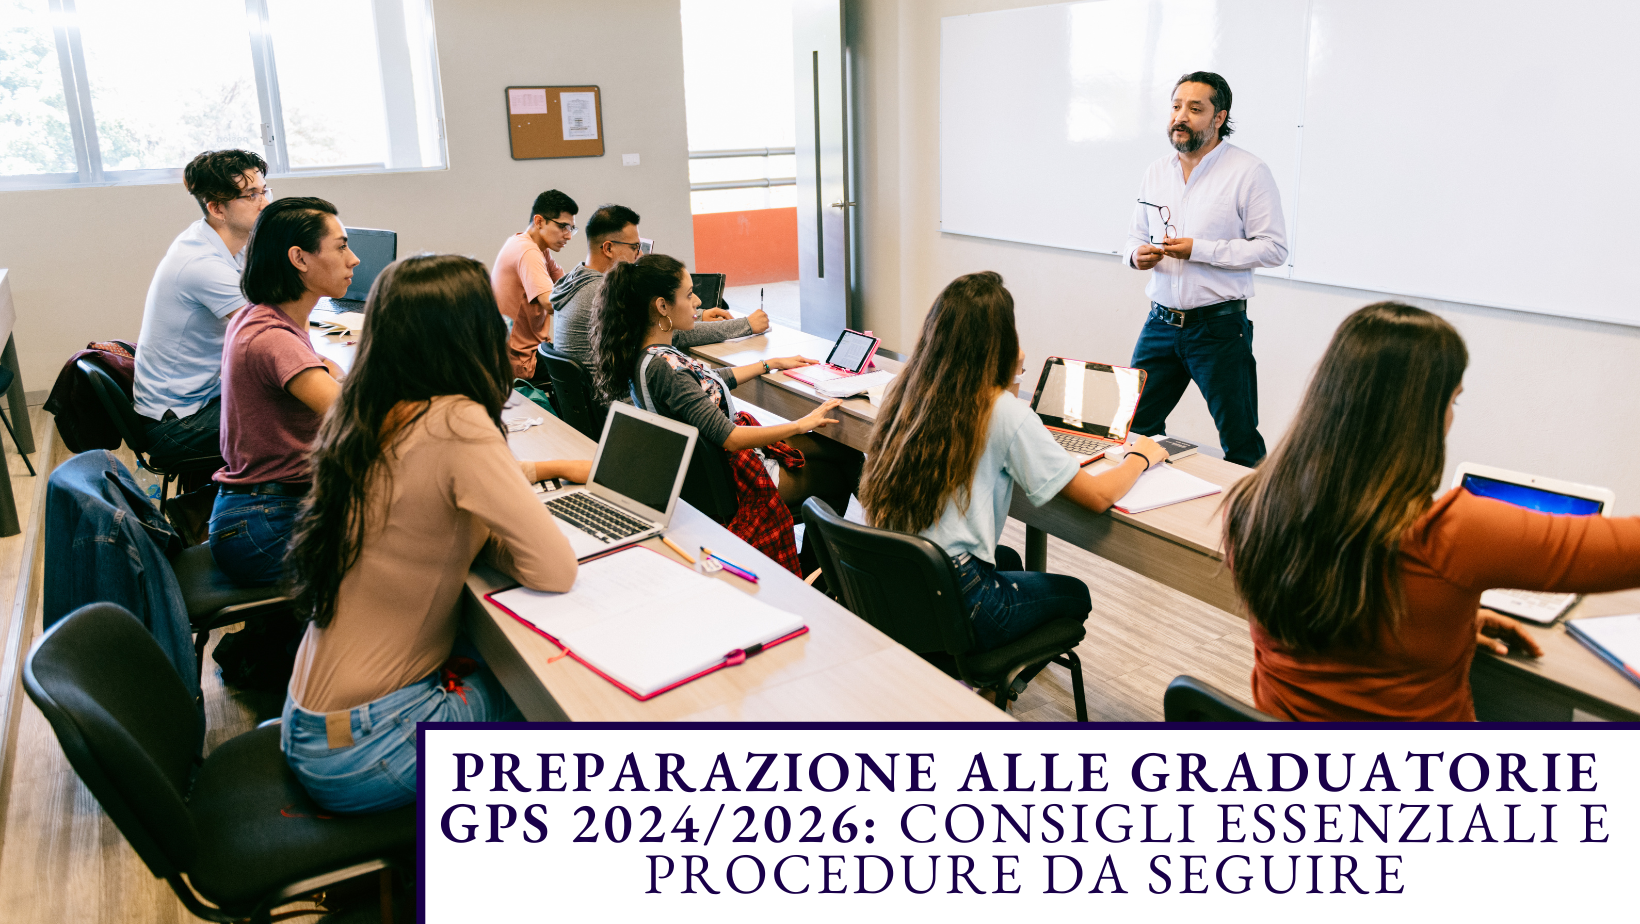 Preparazione alle Graduatorie GPS 2024/2026: consigli essenziali e procedure da seguire